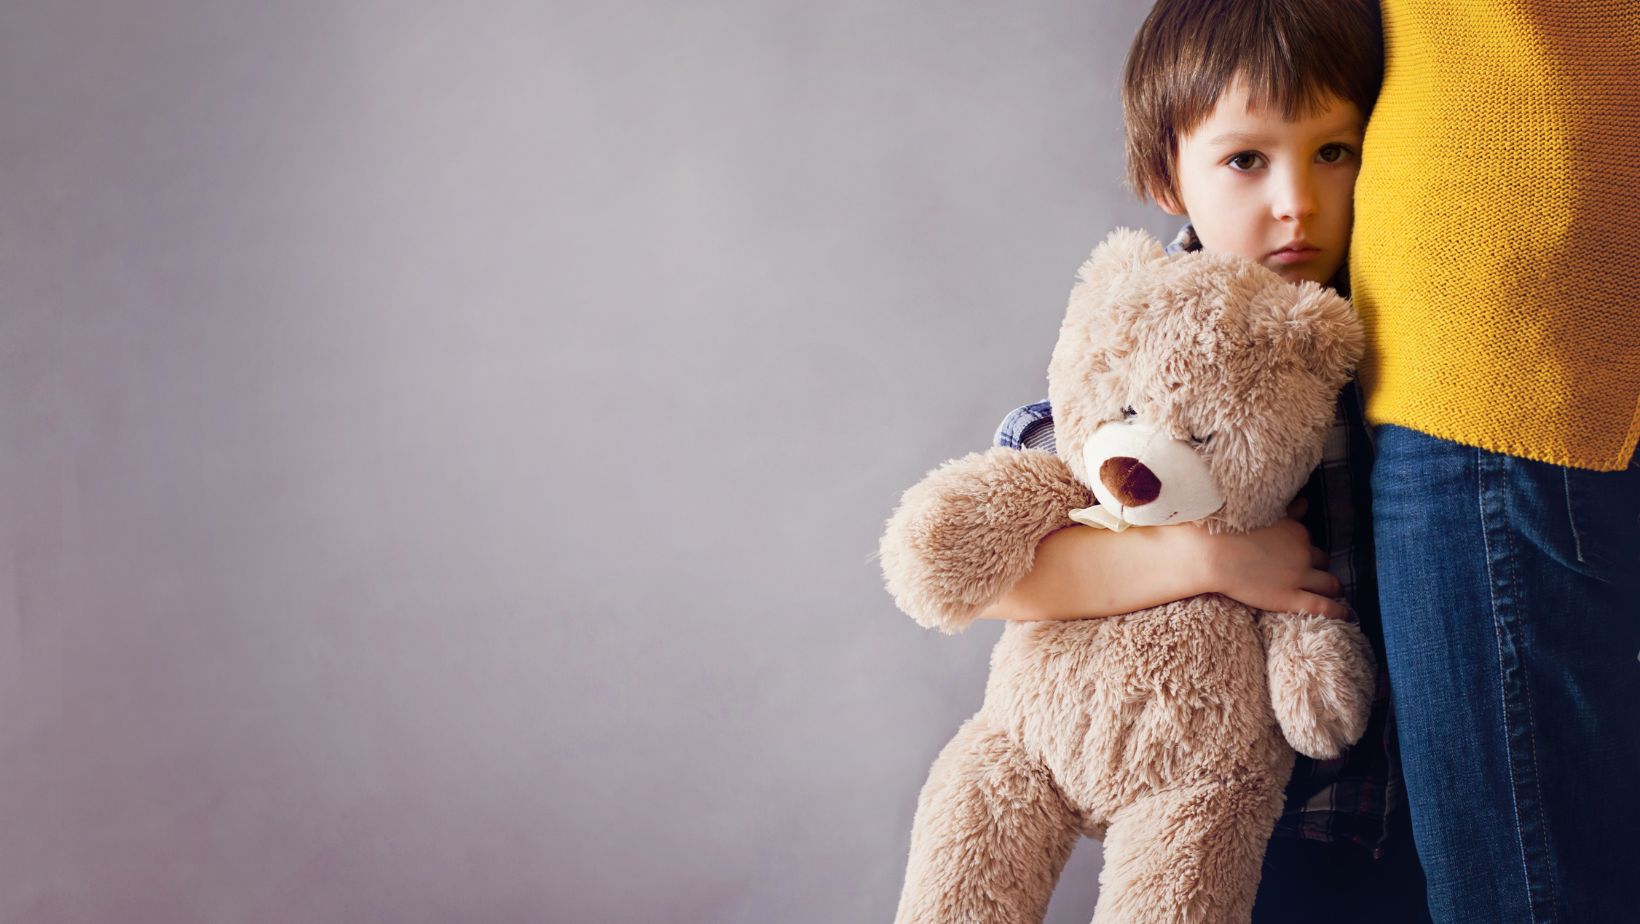 Interwencyjne odebranie dziecka – ze szczególnym uwzględnieniem art. 12a ustawy o przeciwdziałaniu przemocy w rodzinie (przemocy domowej).